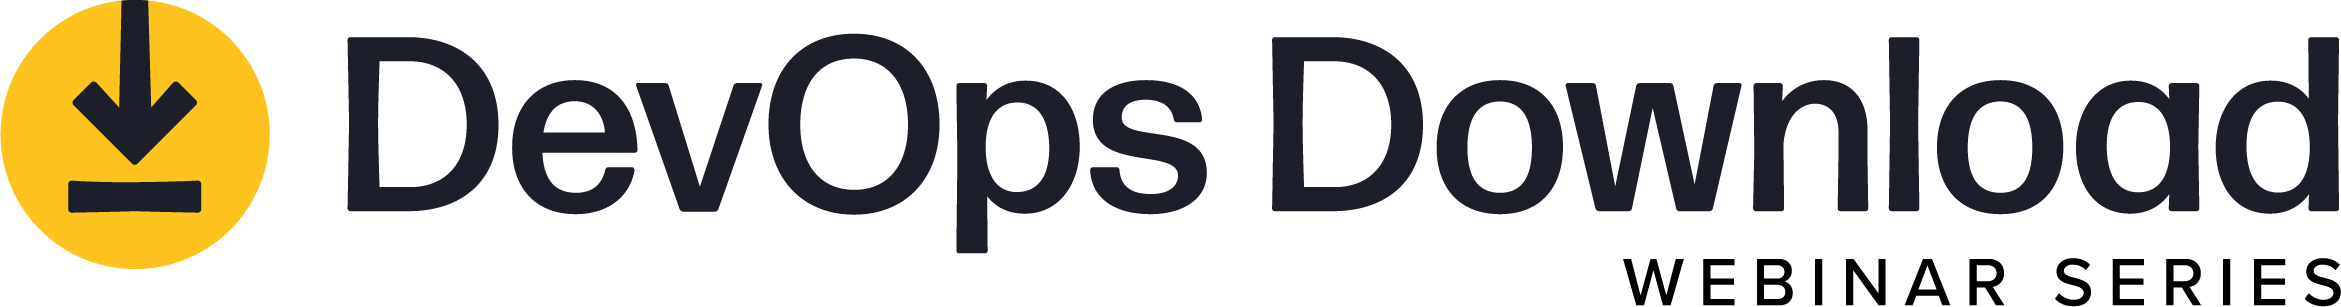 DevOps-Download-webinar-logo-narrow@2x